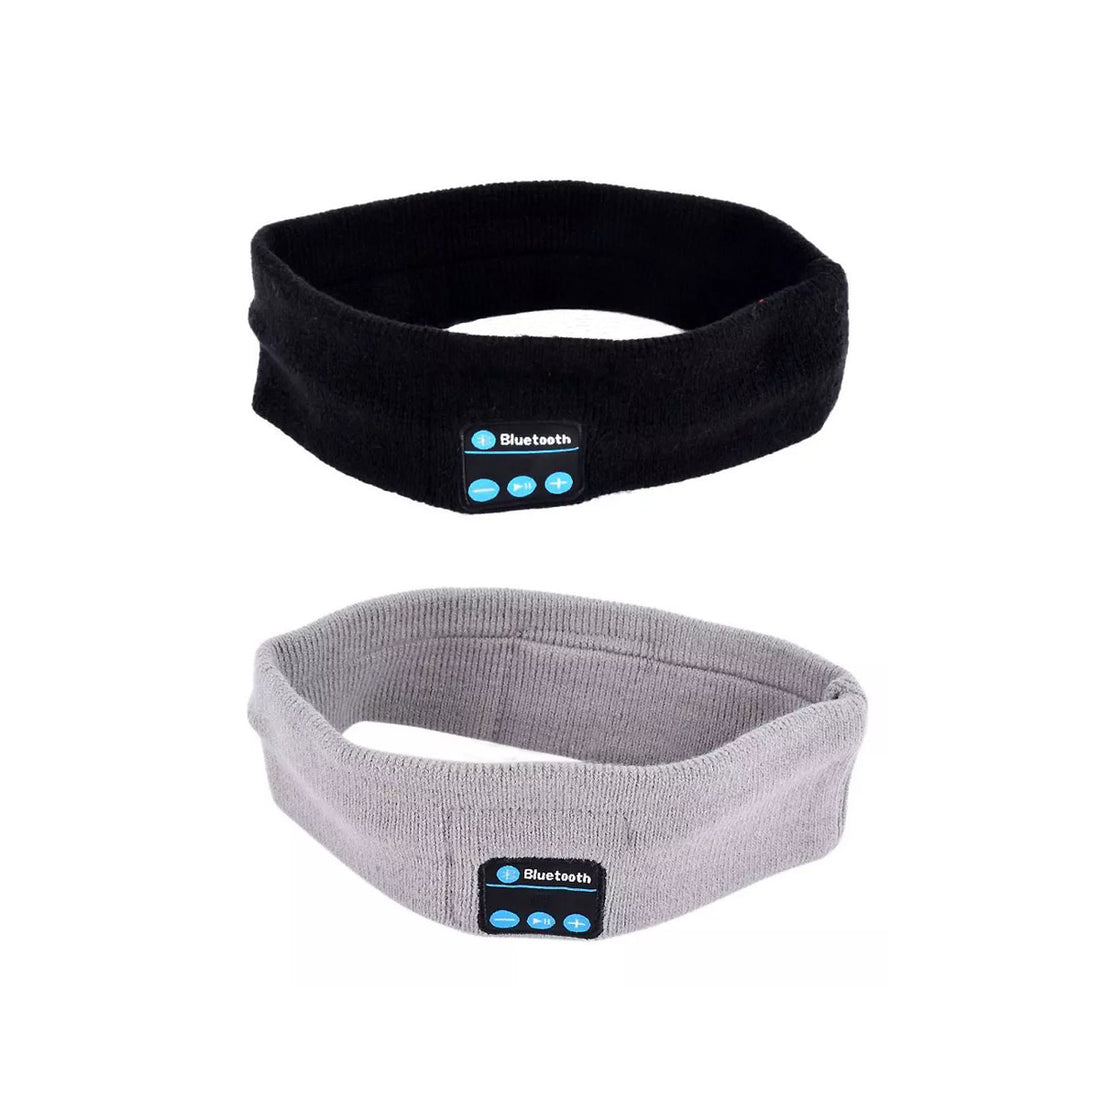 Bluetooth Stretch Head Wrap - Black or Grey